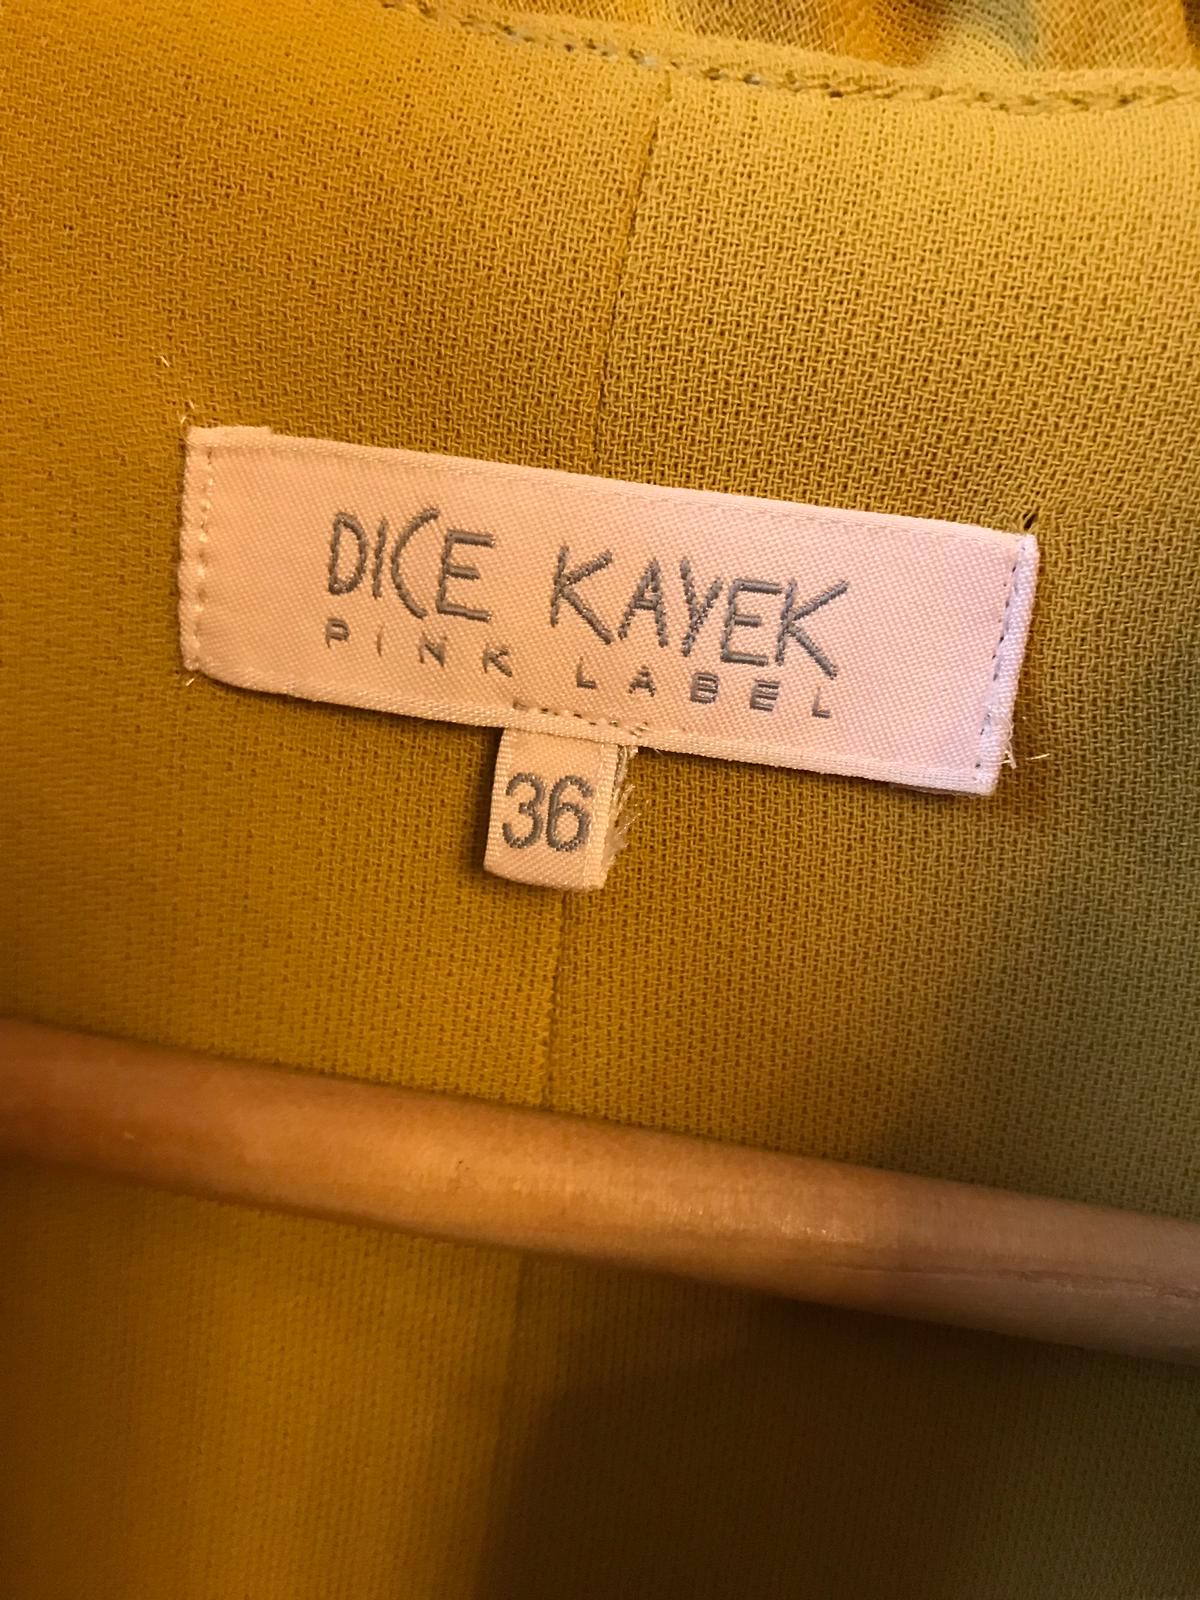 Robe Dice Kayek T.36 NEUVE